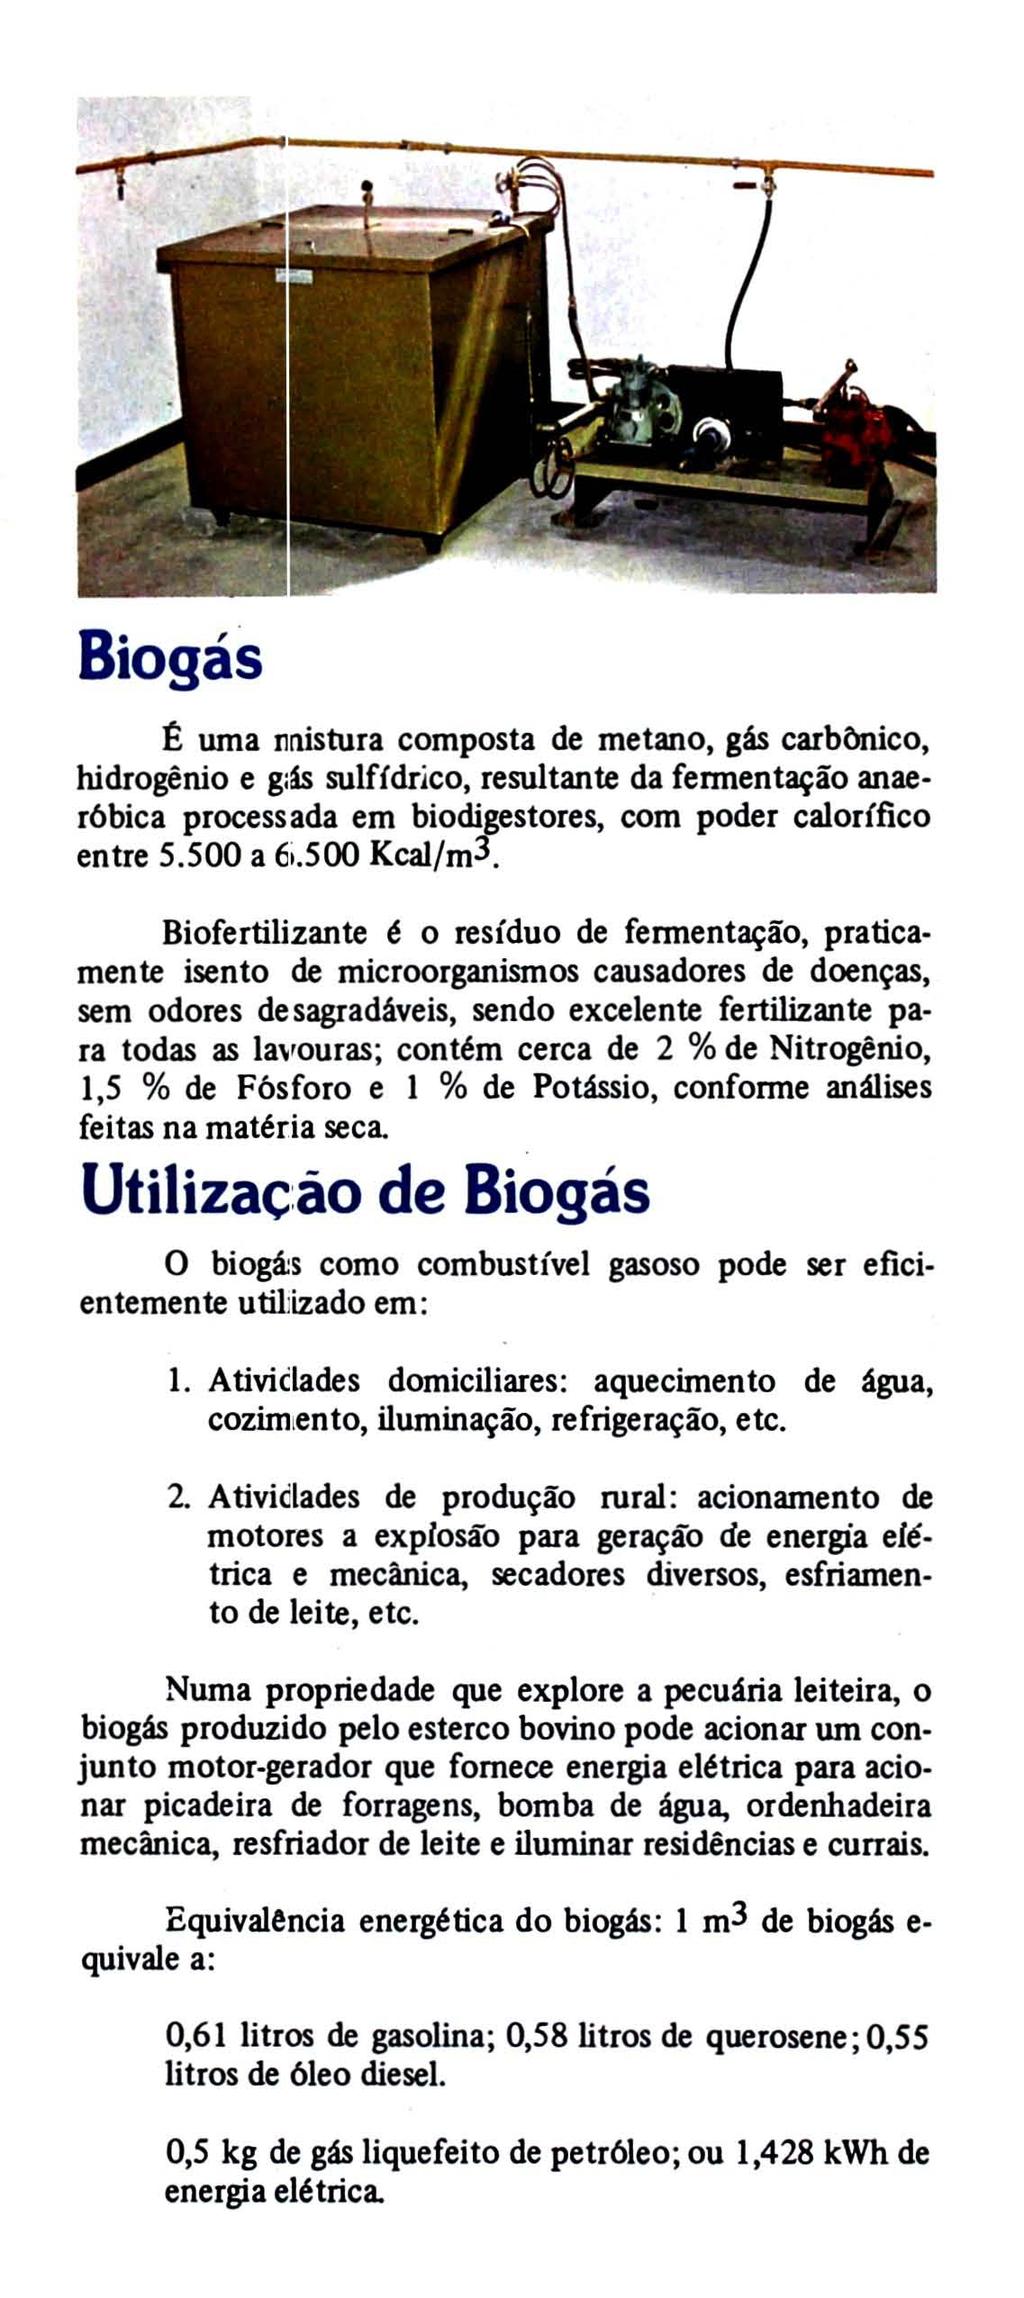 Biogás ~ uma nnistura composta de metano, gás carbônico, hidrogênio e g:ás sulfídrico, resultante da feuilentação anaer6bica processada em biodigestores, com poder calorífico entre 5.500 a 6i.